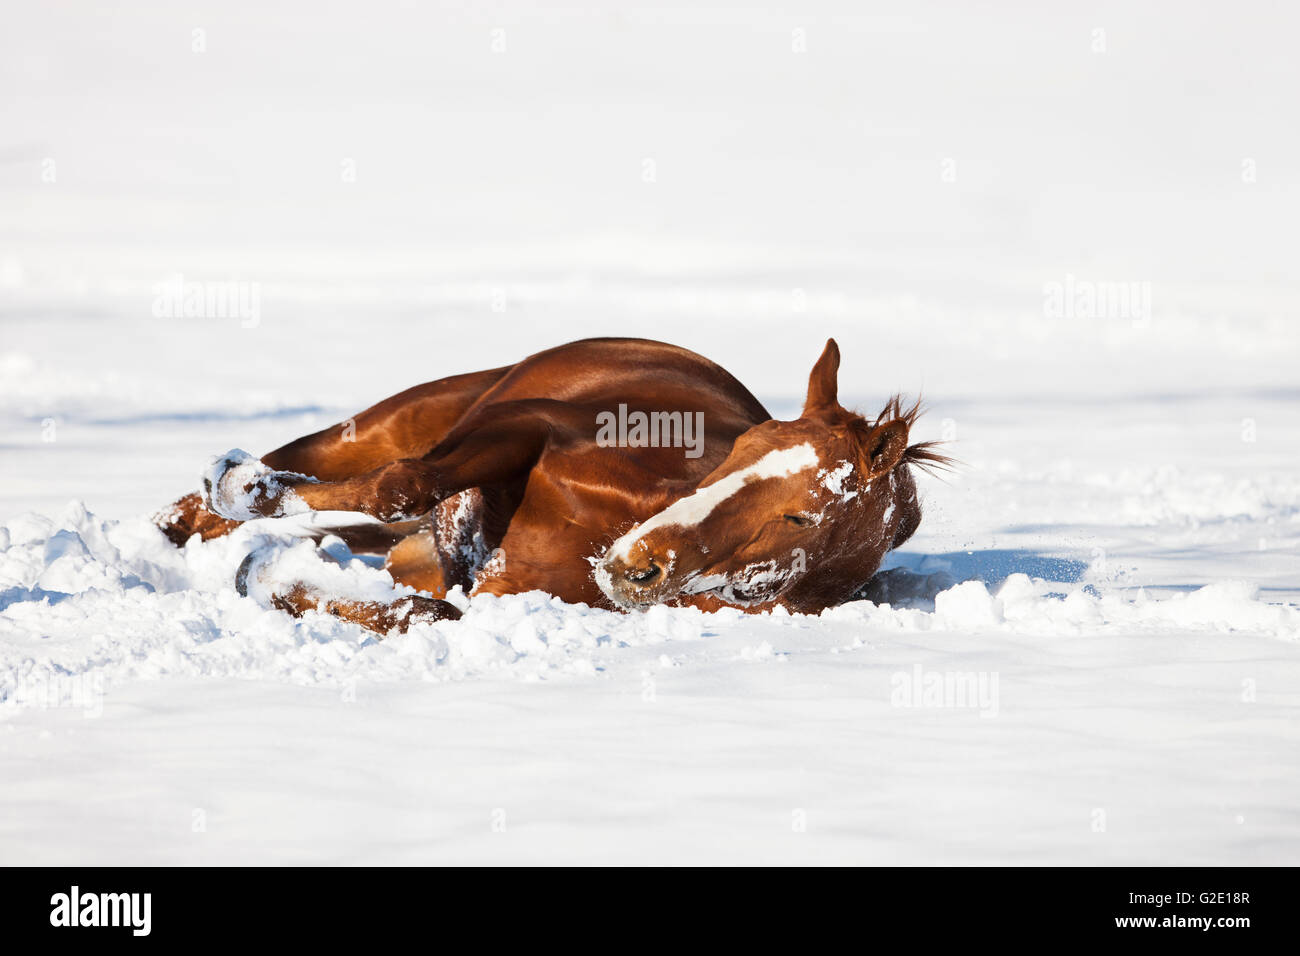 Chevaux hanovriens, Fox, brun rougeâtre, de fourrure, de rouler dans la neige, Tyrol, Autriche Banque D'Images